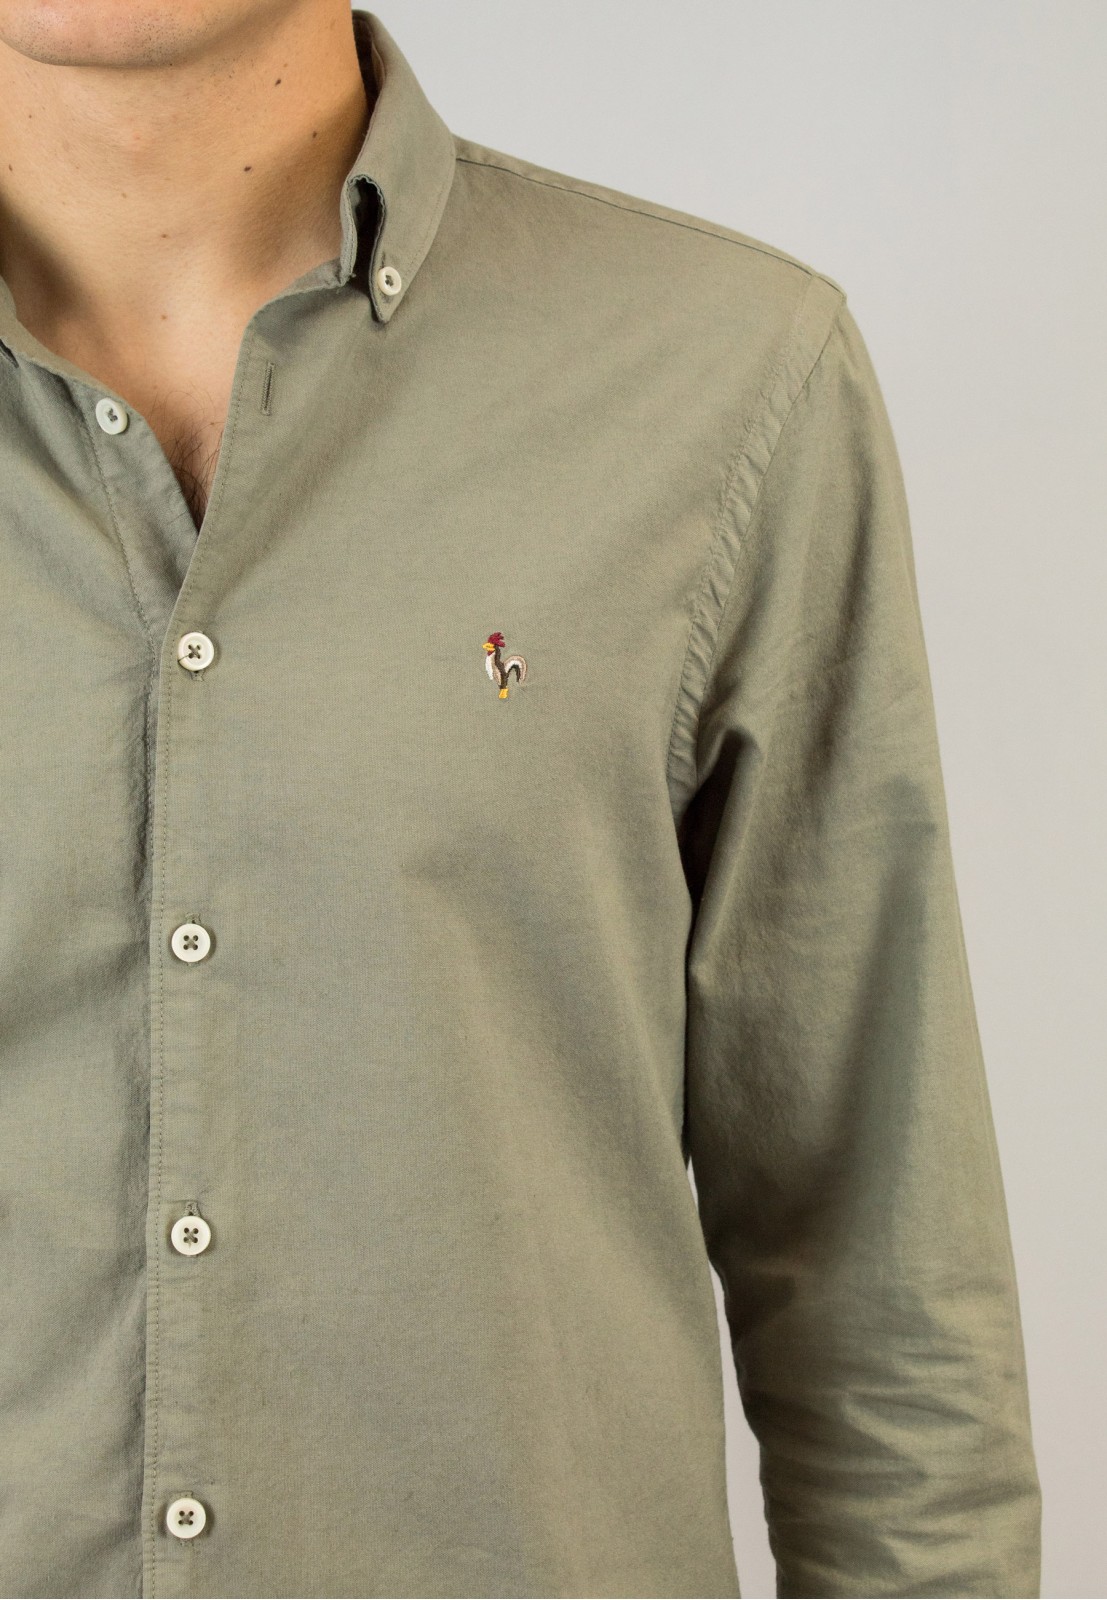 Camisa de hombre Leonardo kaki Patadegayo de calidad sostenible fabricada en España - detalle logo